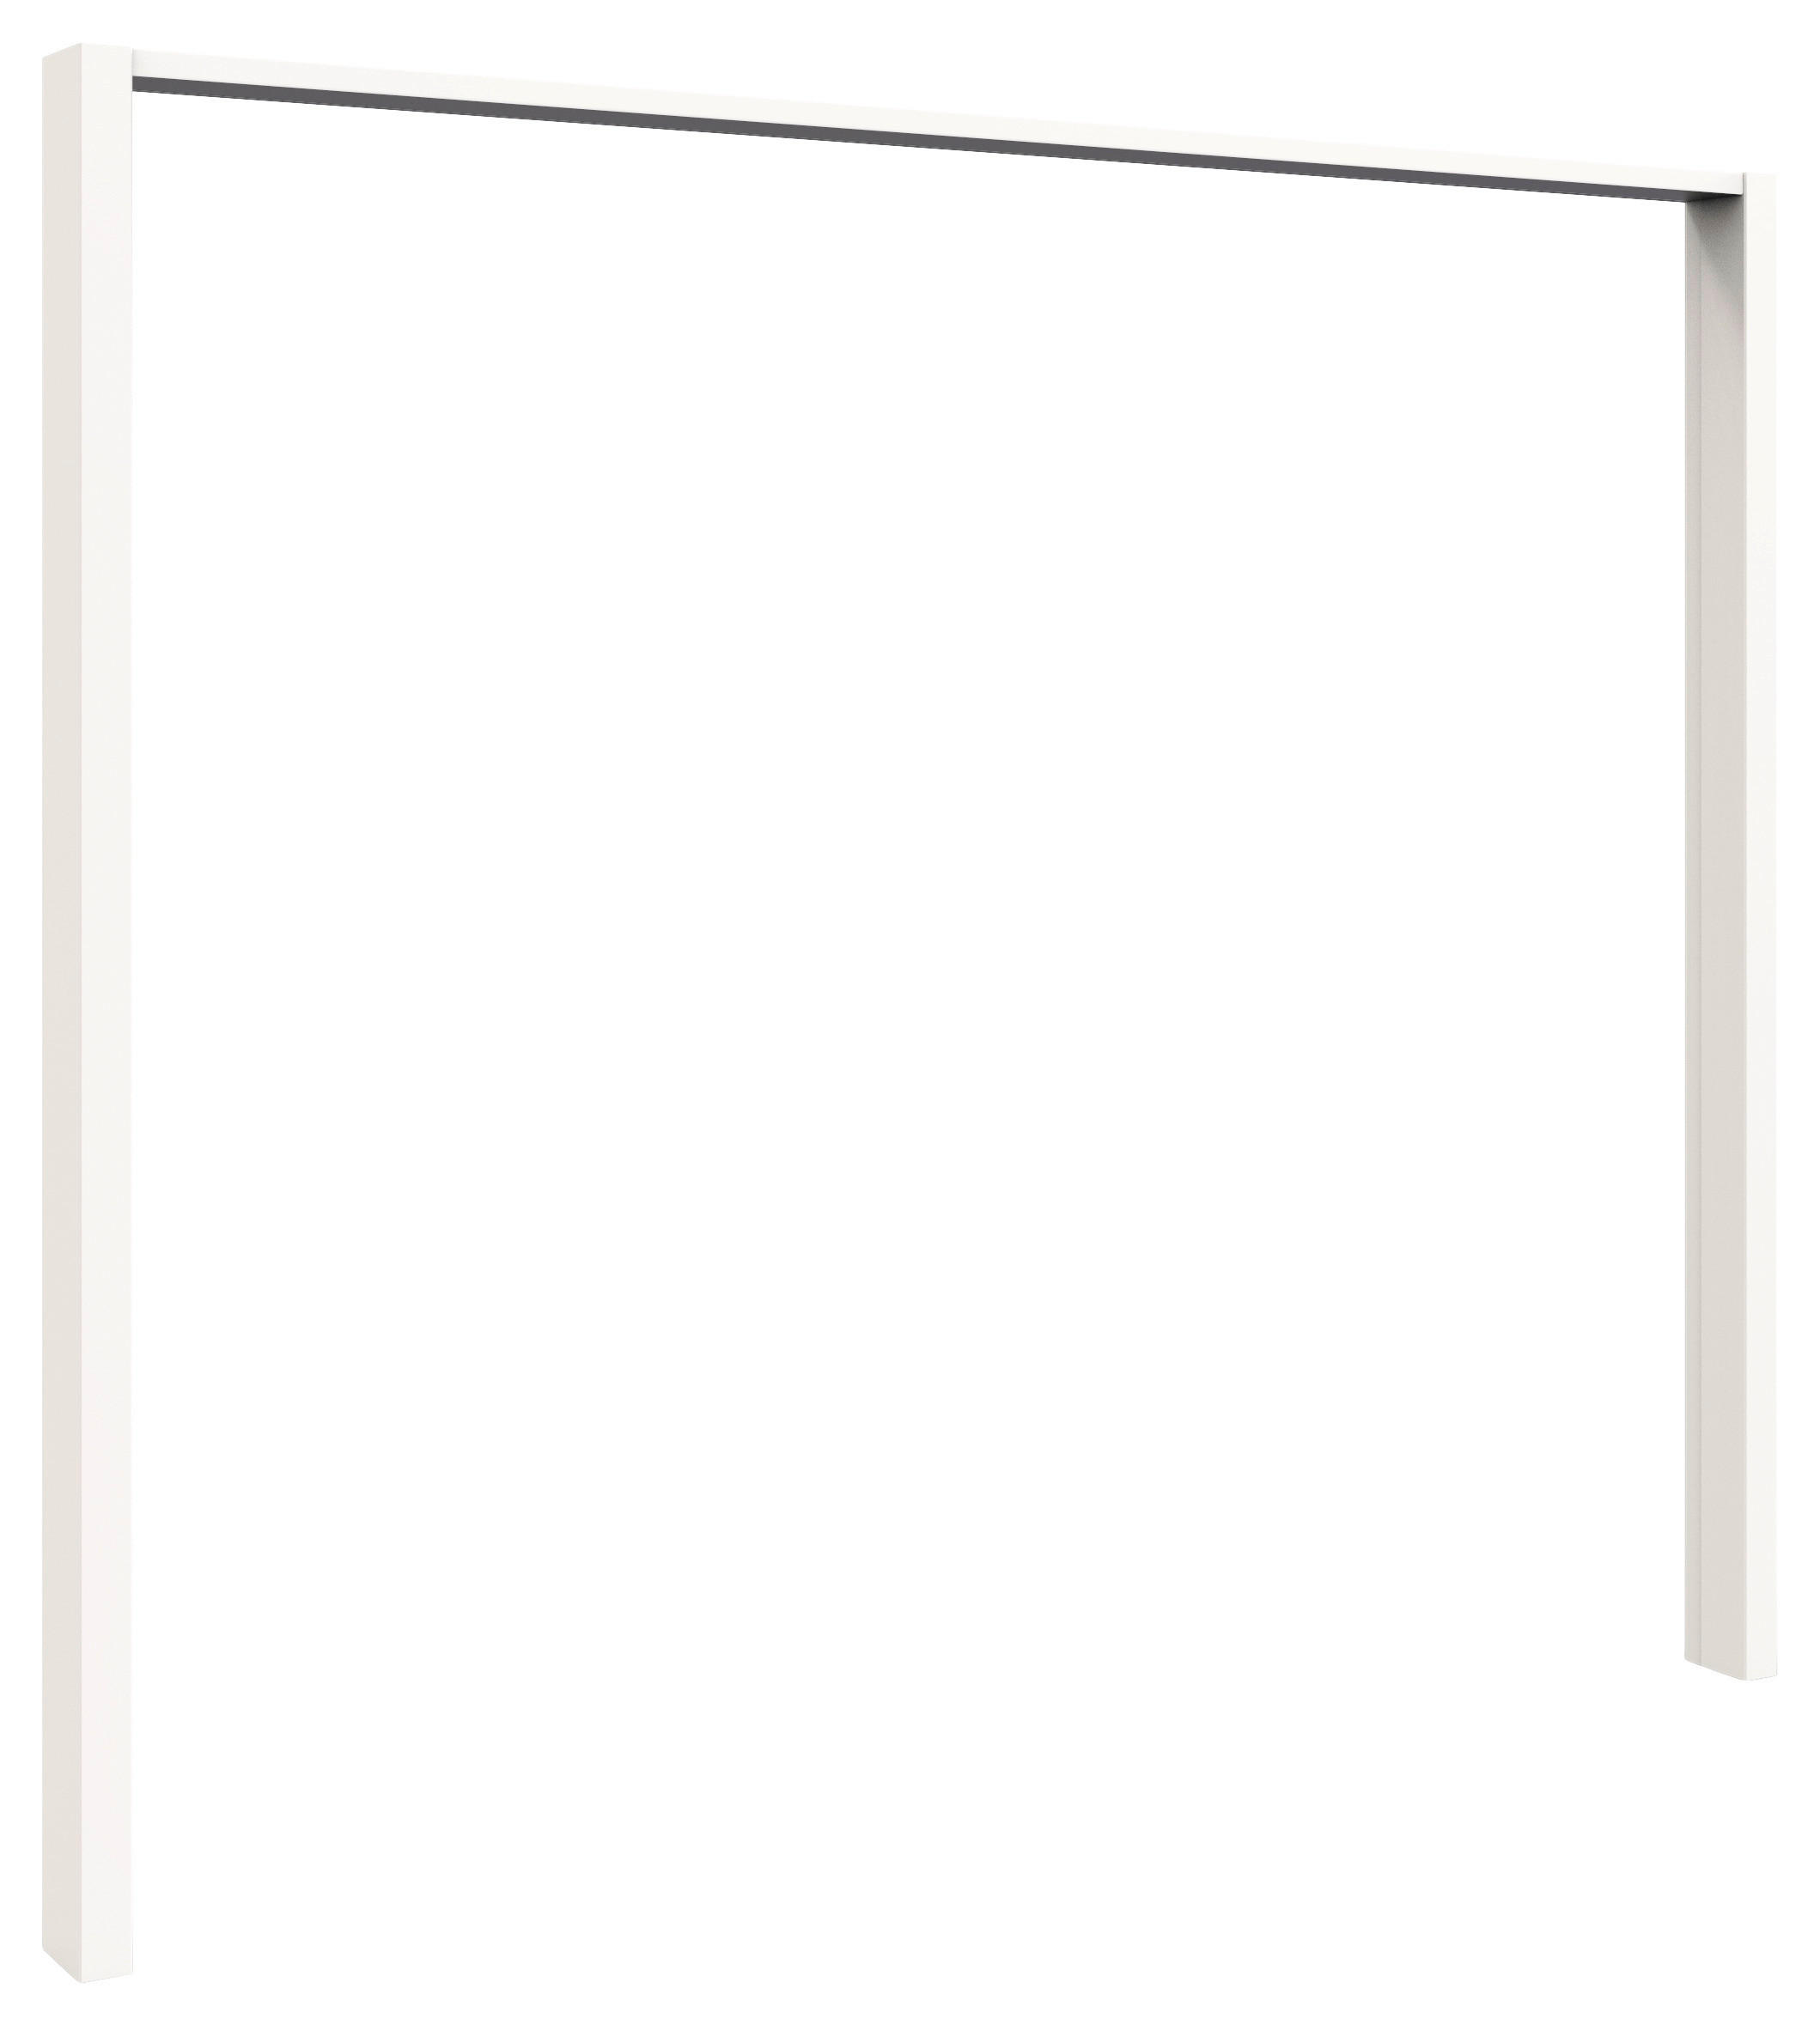 PASSEPARTOUTRAHMEN Weiß  - Weiß, KONVENTIONELL, Holzwerkstoff (256/220/12cm) - Venda